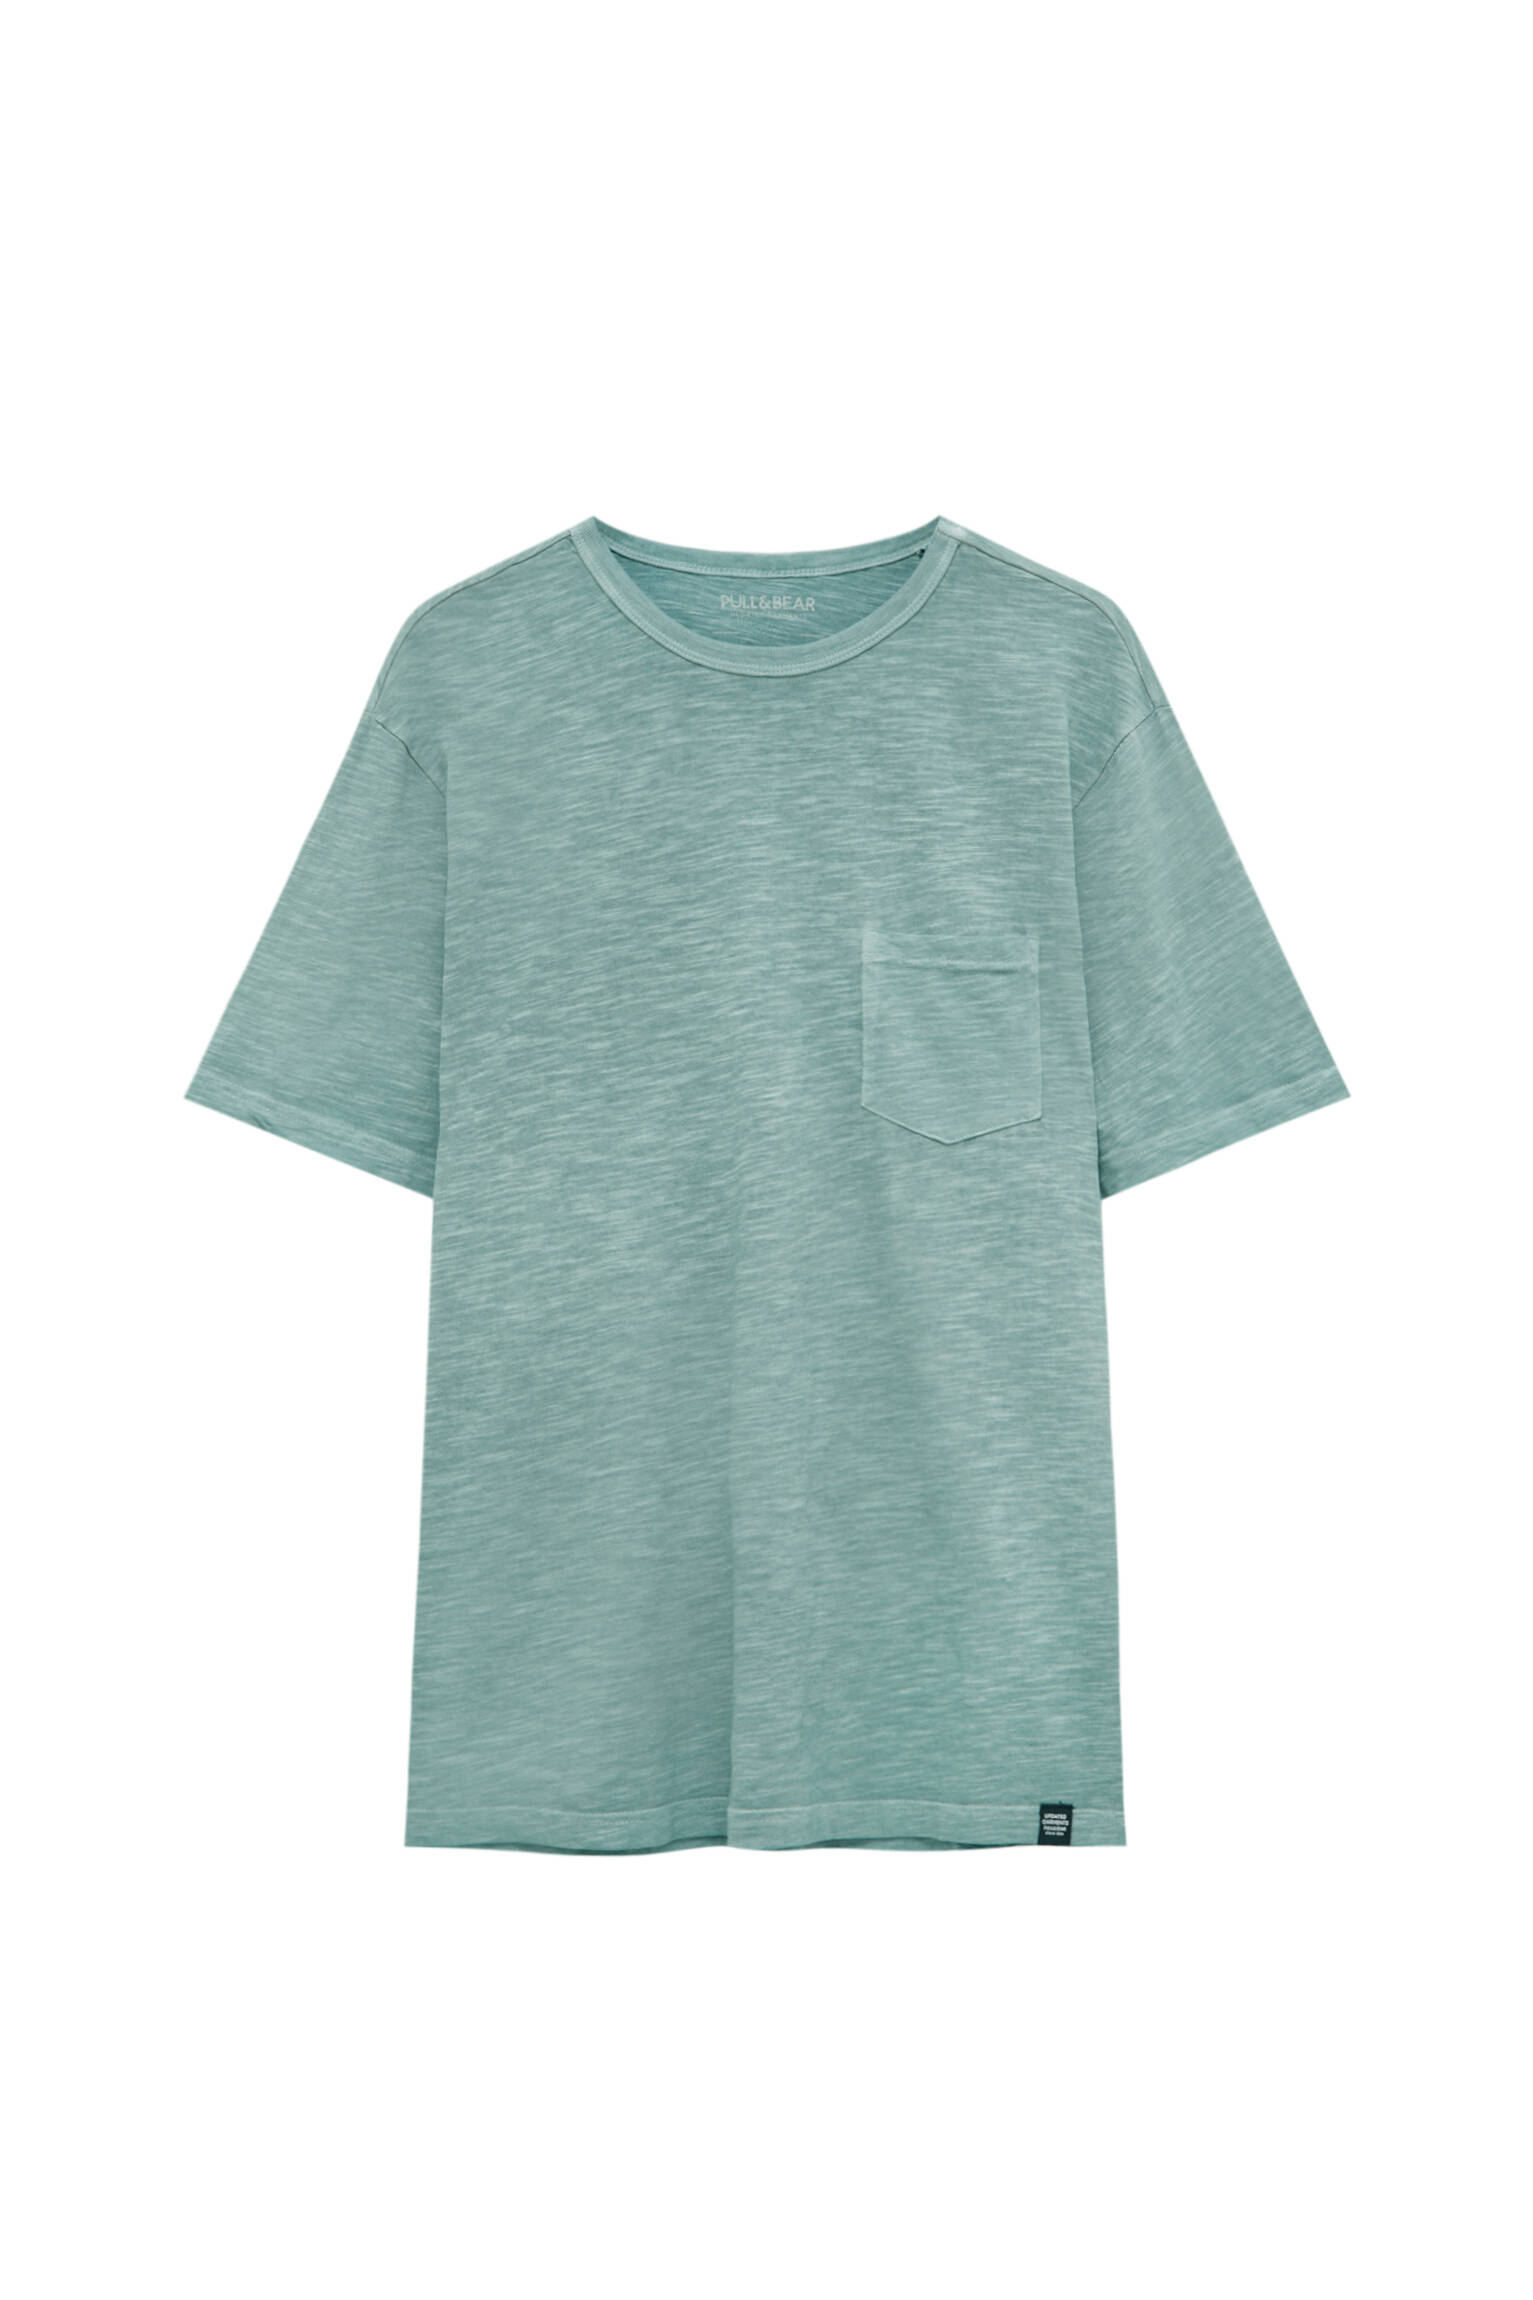 Pull&bear Homme T-shirt Garment Dyed Coupe Regular En Tissu Slub 100 % Coton, à Manches Courtes Et Col Rond. Vert D'eau Xs